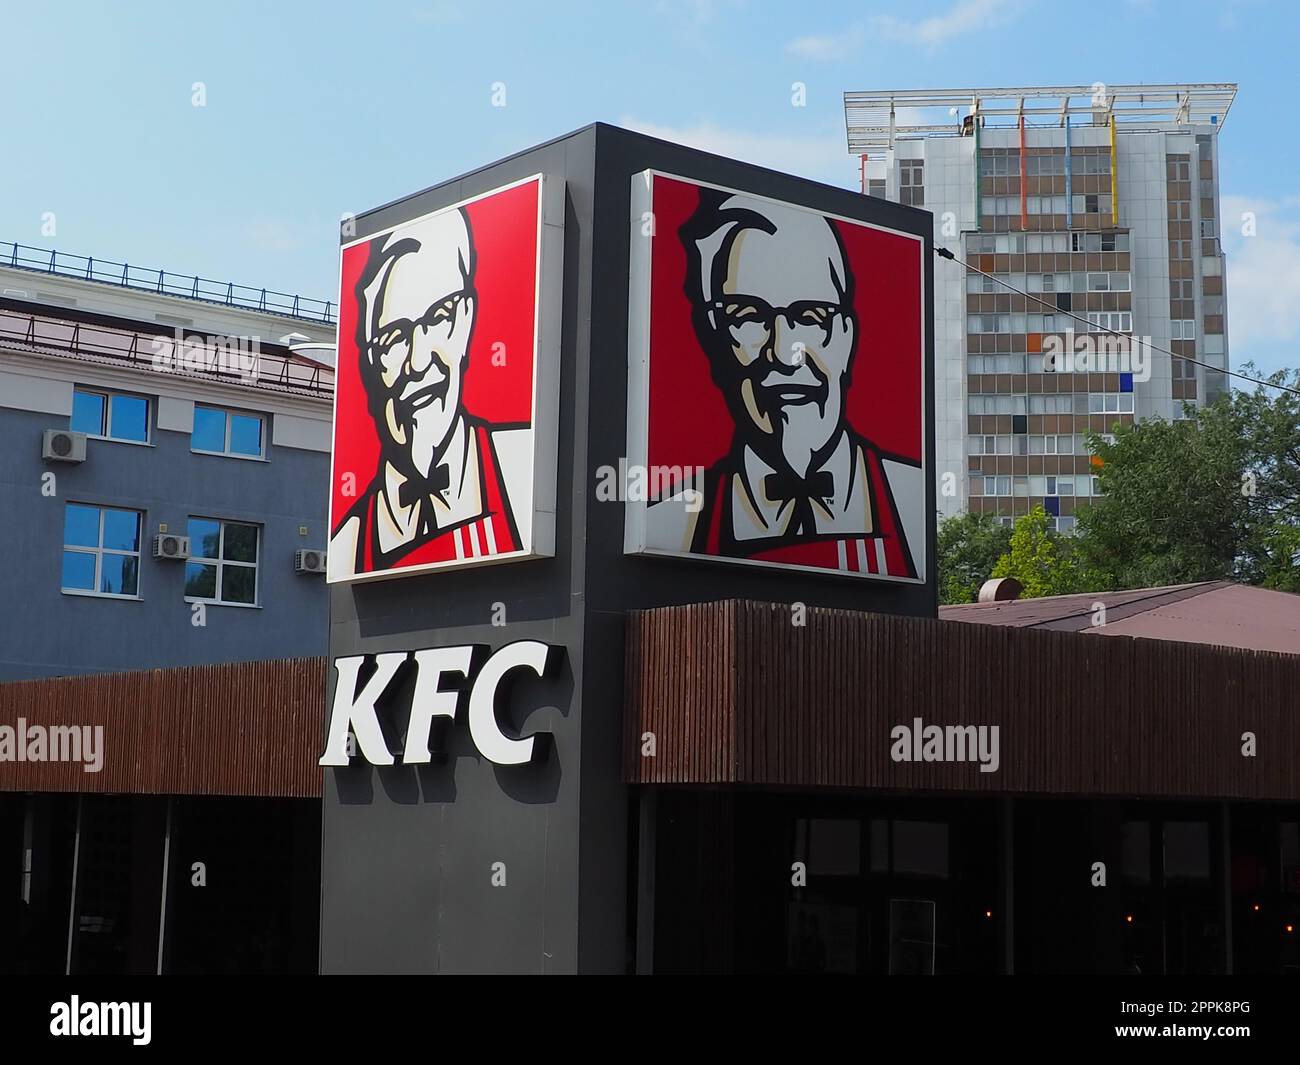 Anapa, Russland, 23. August 2021. KFC Restaurant. Kentucky Fried Chicken, kurz KFC, ist eine internationale Lebensmittelkette, die auf Hühnergerichte spezialisiert ist. Marken-, Logo- oder Außenwerbung Stockfoto